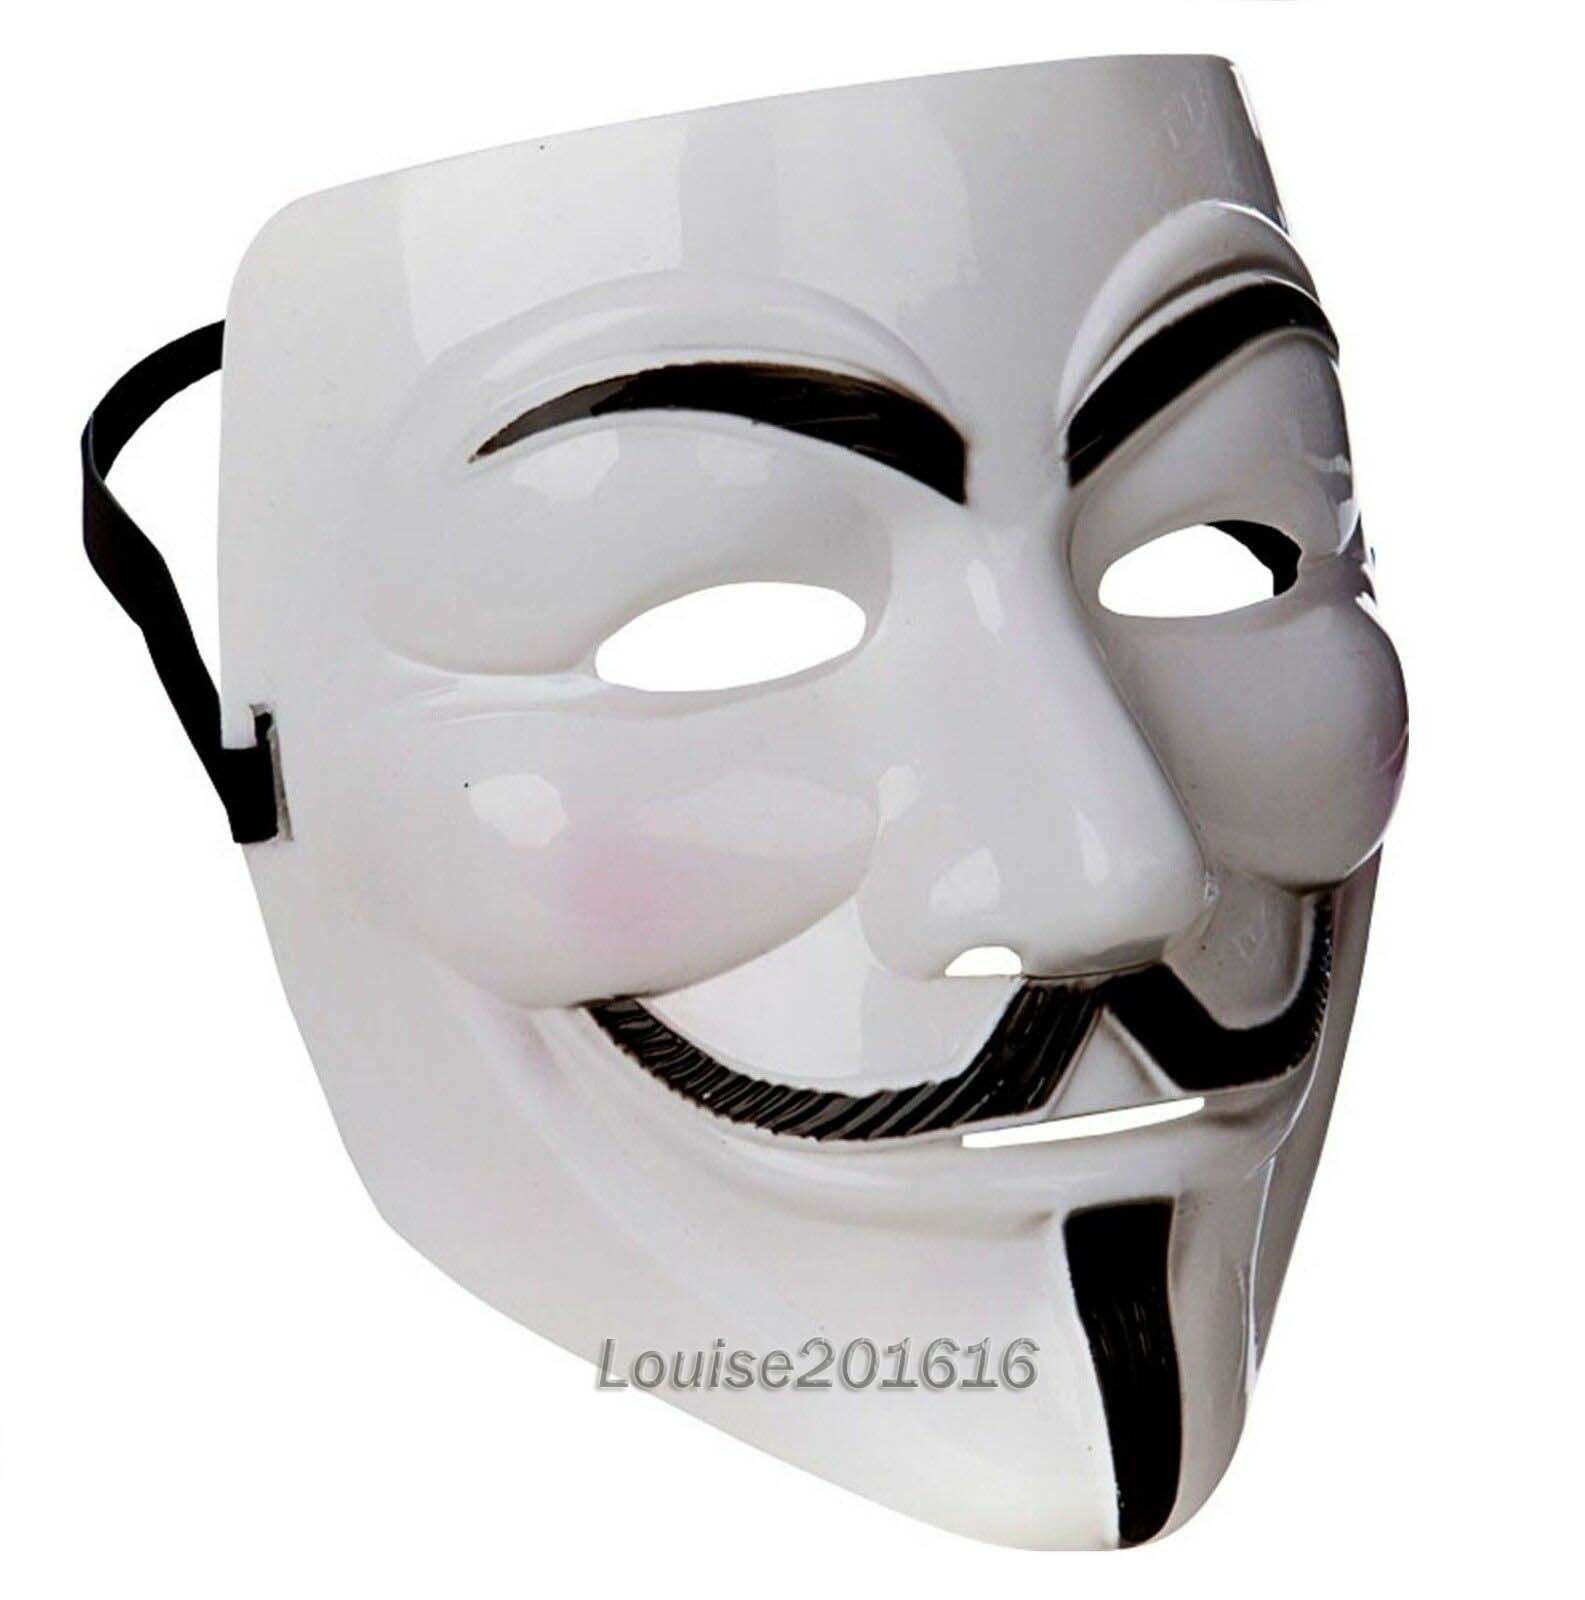 Маска цена билета. Анонимус вендетта маска. Маска Анонимуса 2021. Маска Анонимуса на валберис.